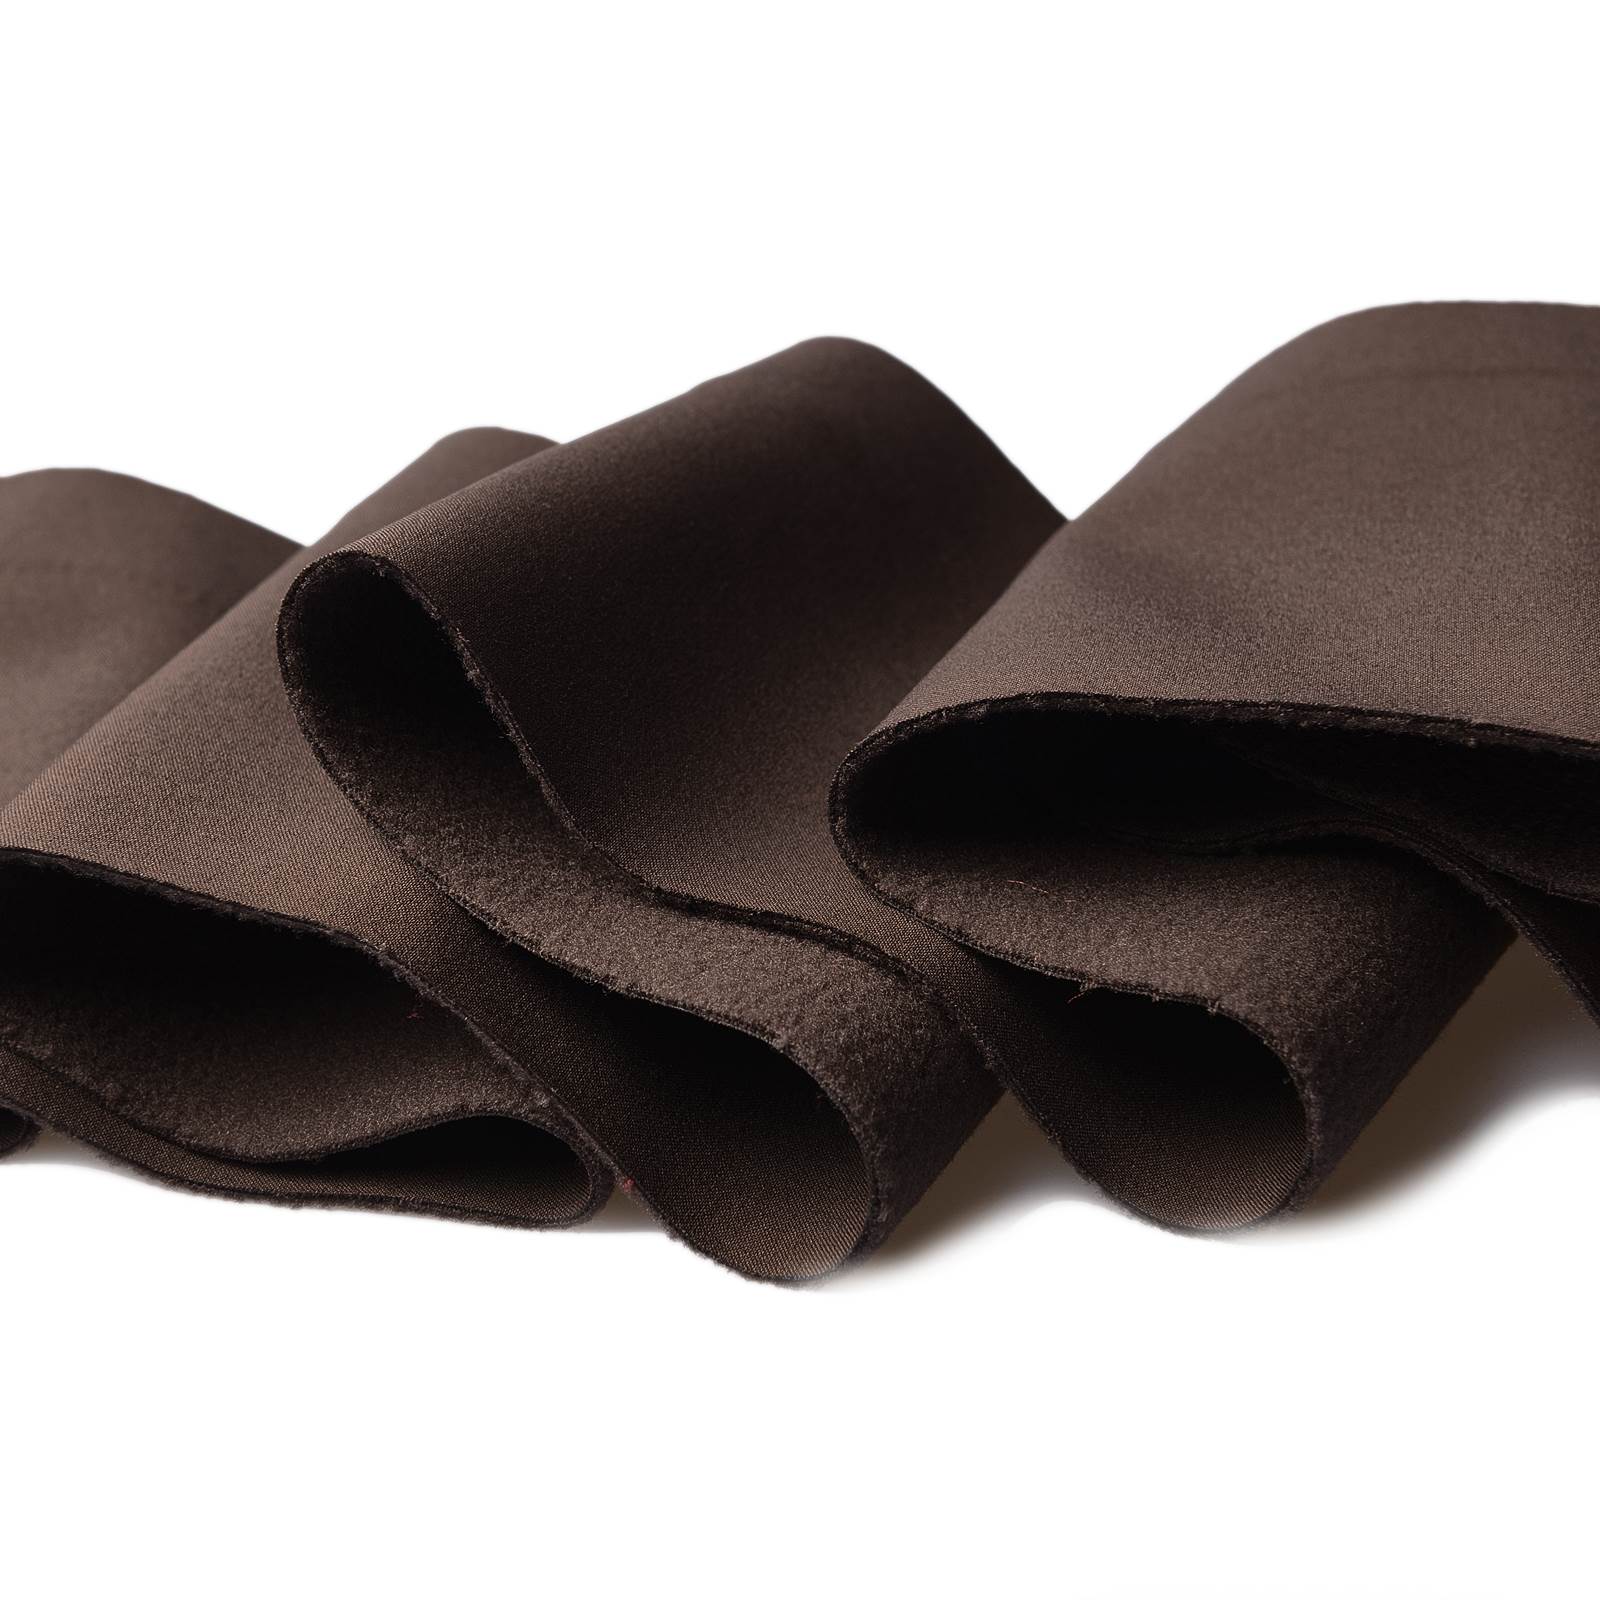 Softshell – A prueba de viento, impermeable y transpirable (marrón turba)